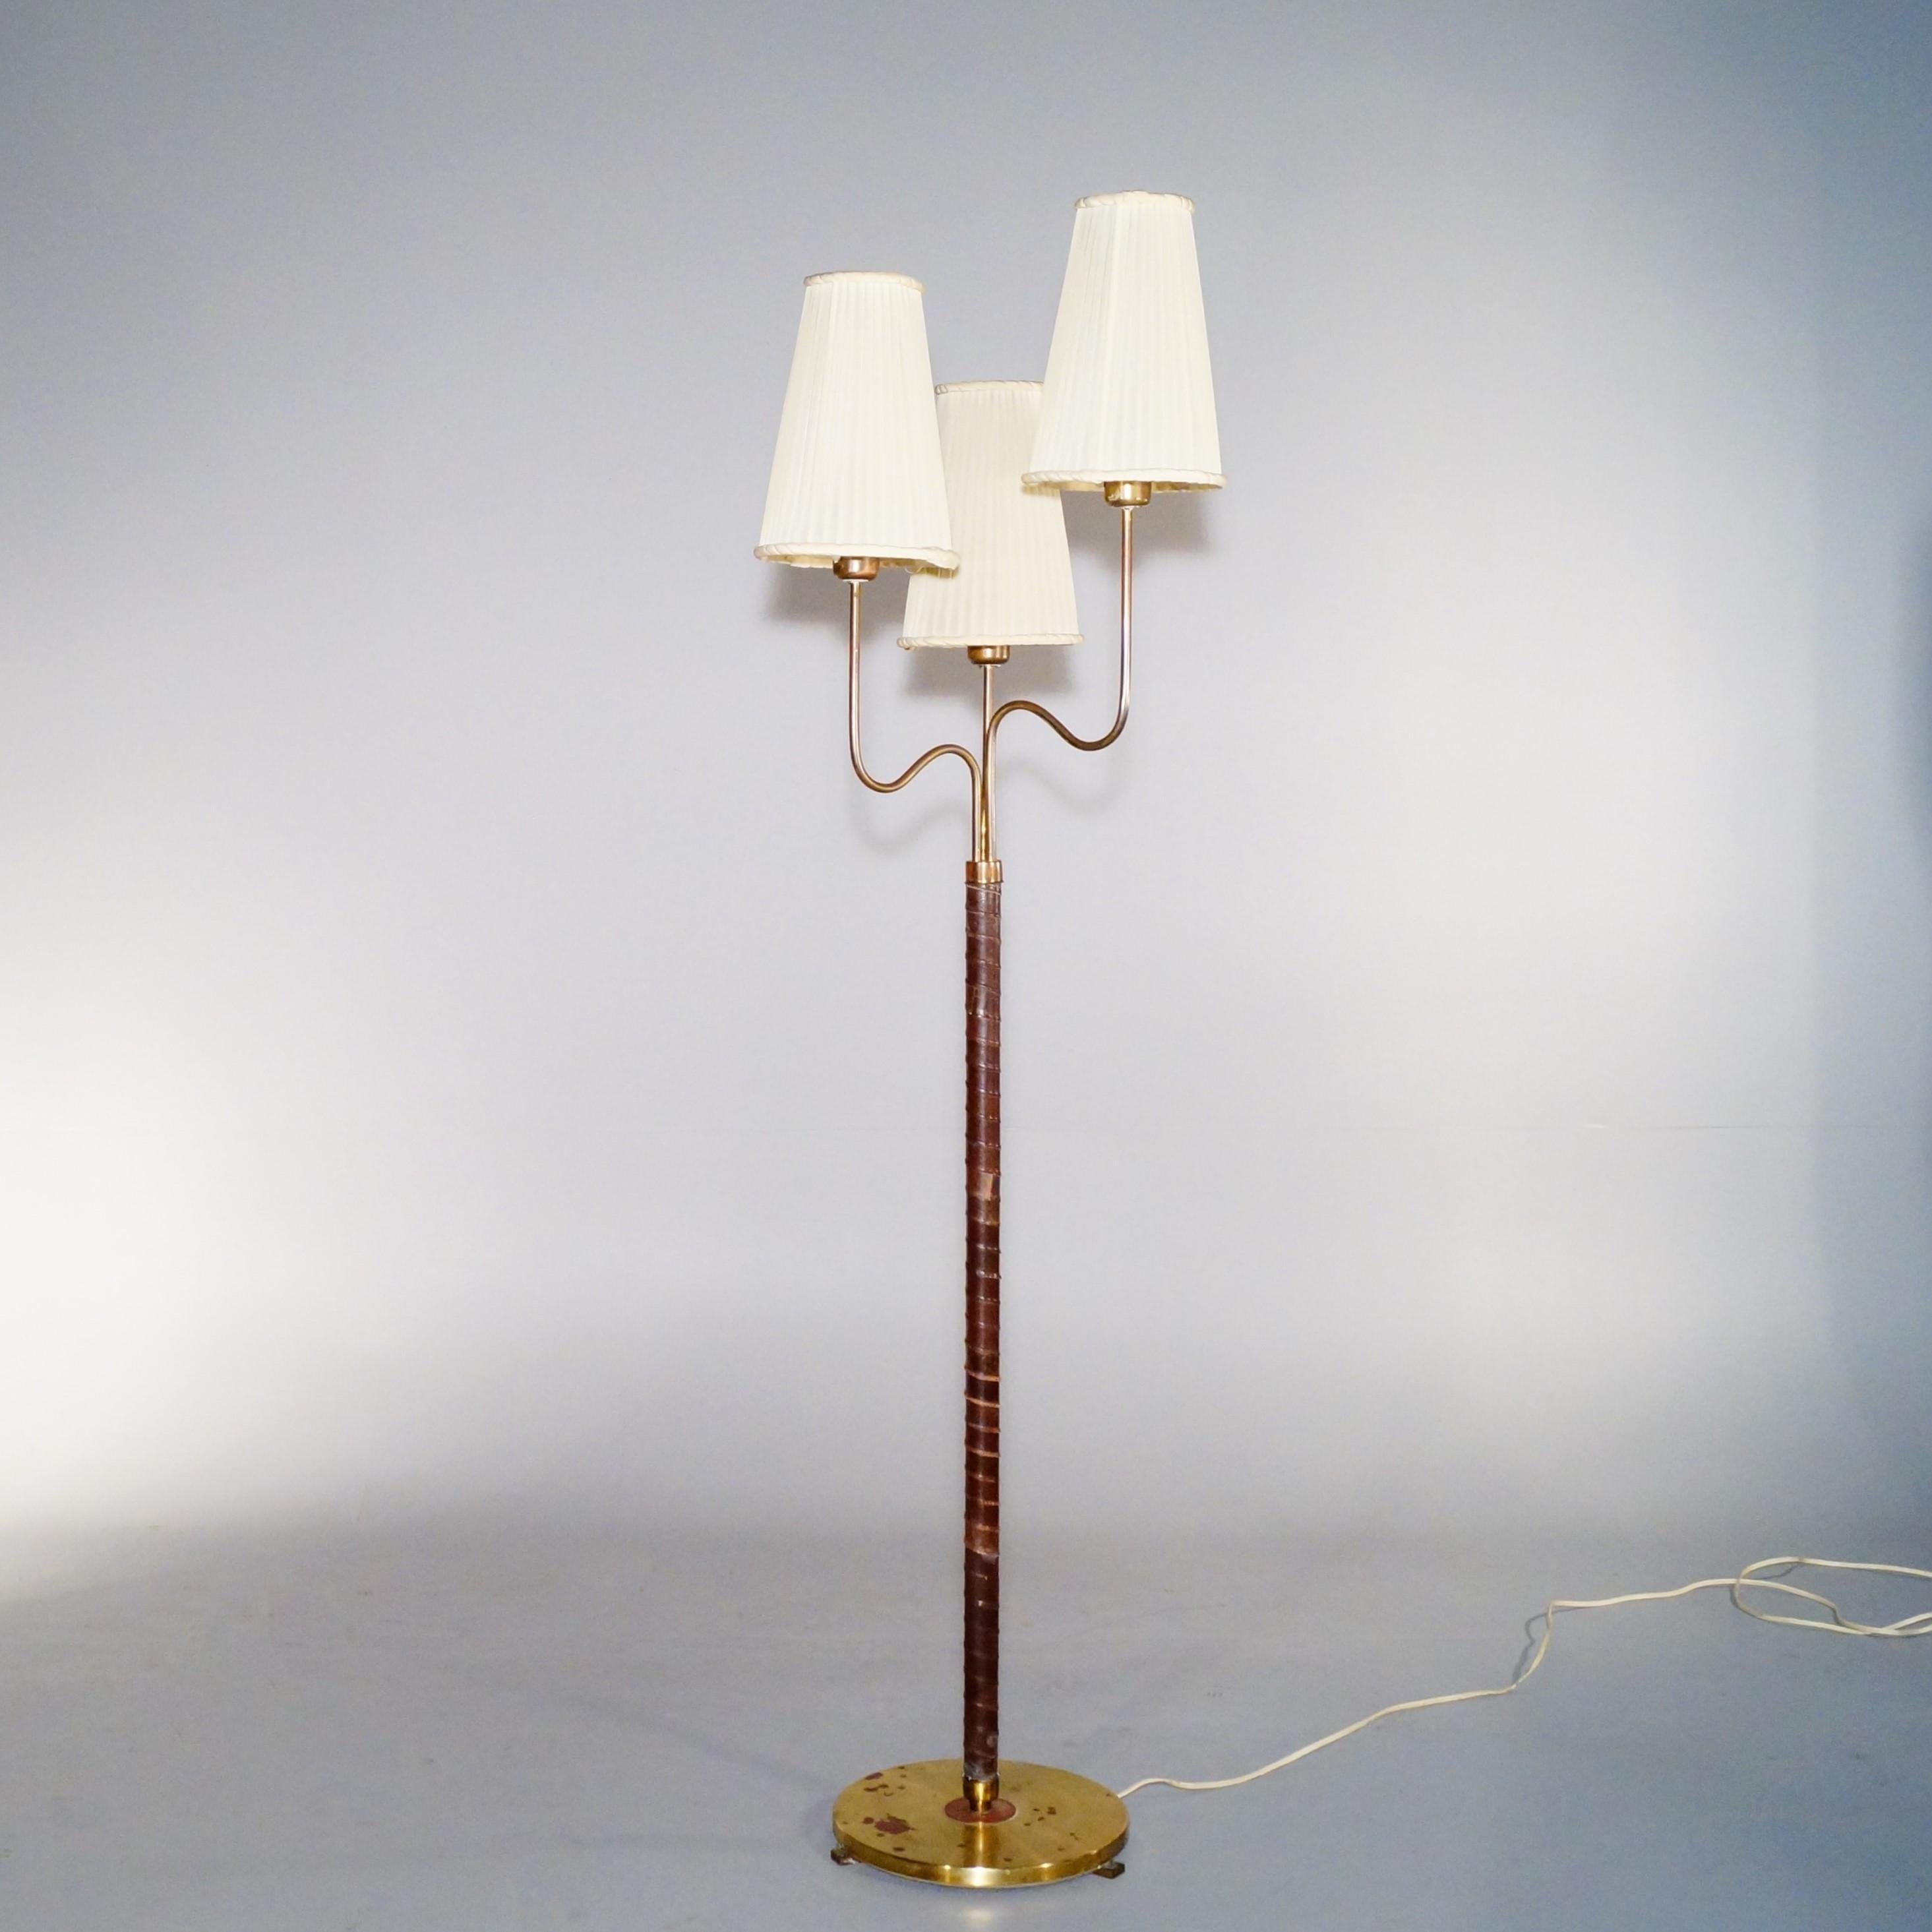 Rare lampadaire à 3 bras organiques et abat-jour équipés chacun d'une douille E27, conçu par Hans Bergström et produit par ASEA en 1946. Les dimensions sont celles du lampadaire avec abat-jour. État d'origine jamais restauré, doit être recâblé. 